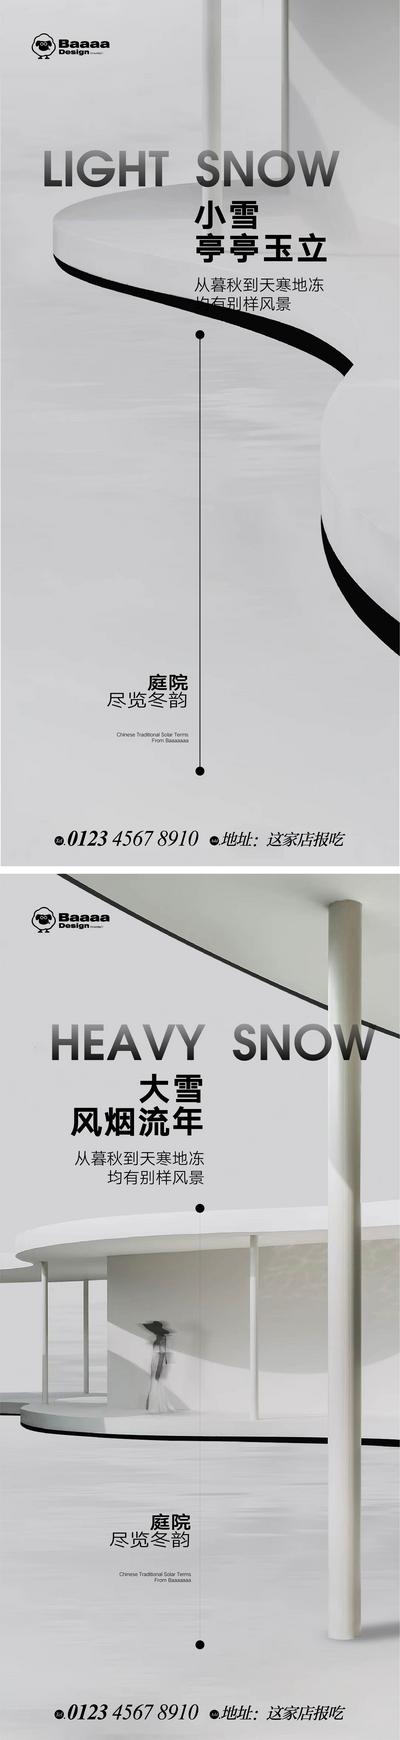 南门网 广告 海报 节气 小雪 大雪 意境 精致 别墅 圈层 微单